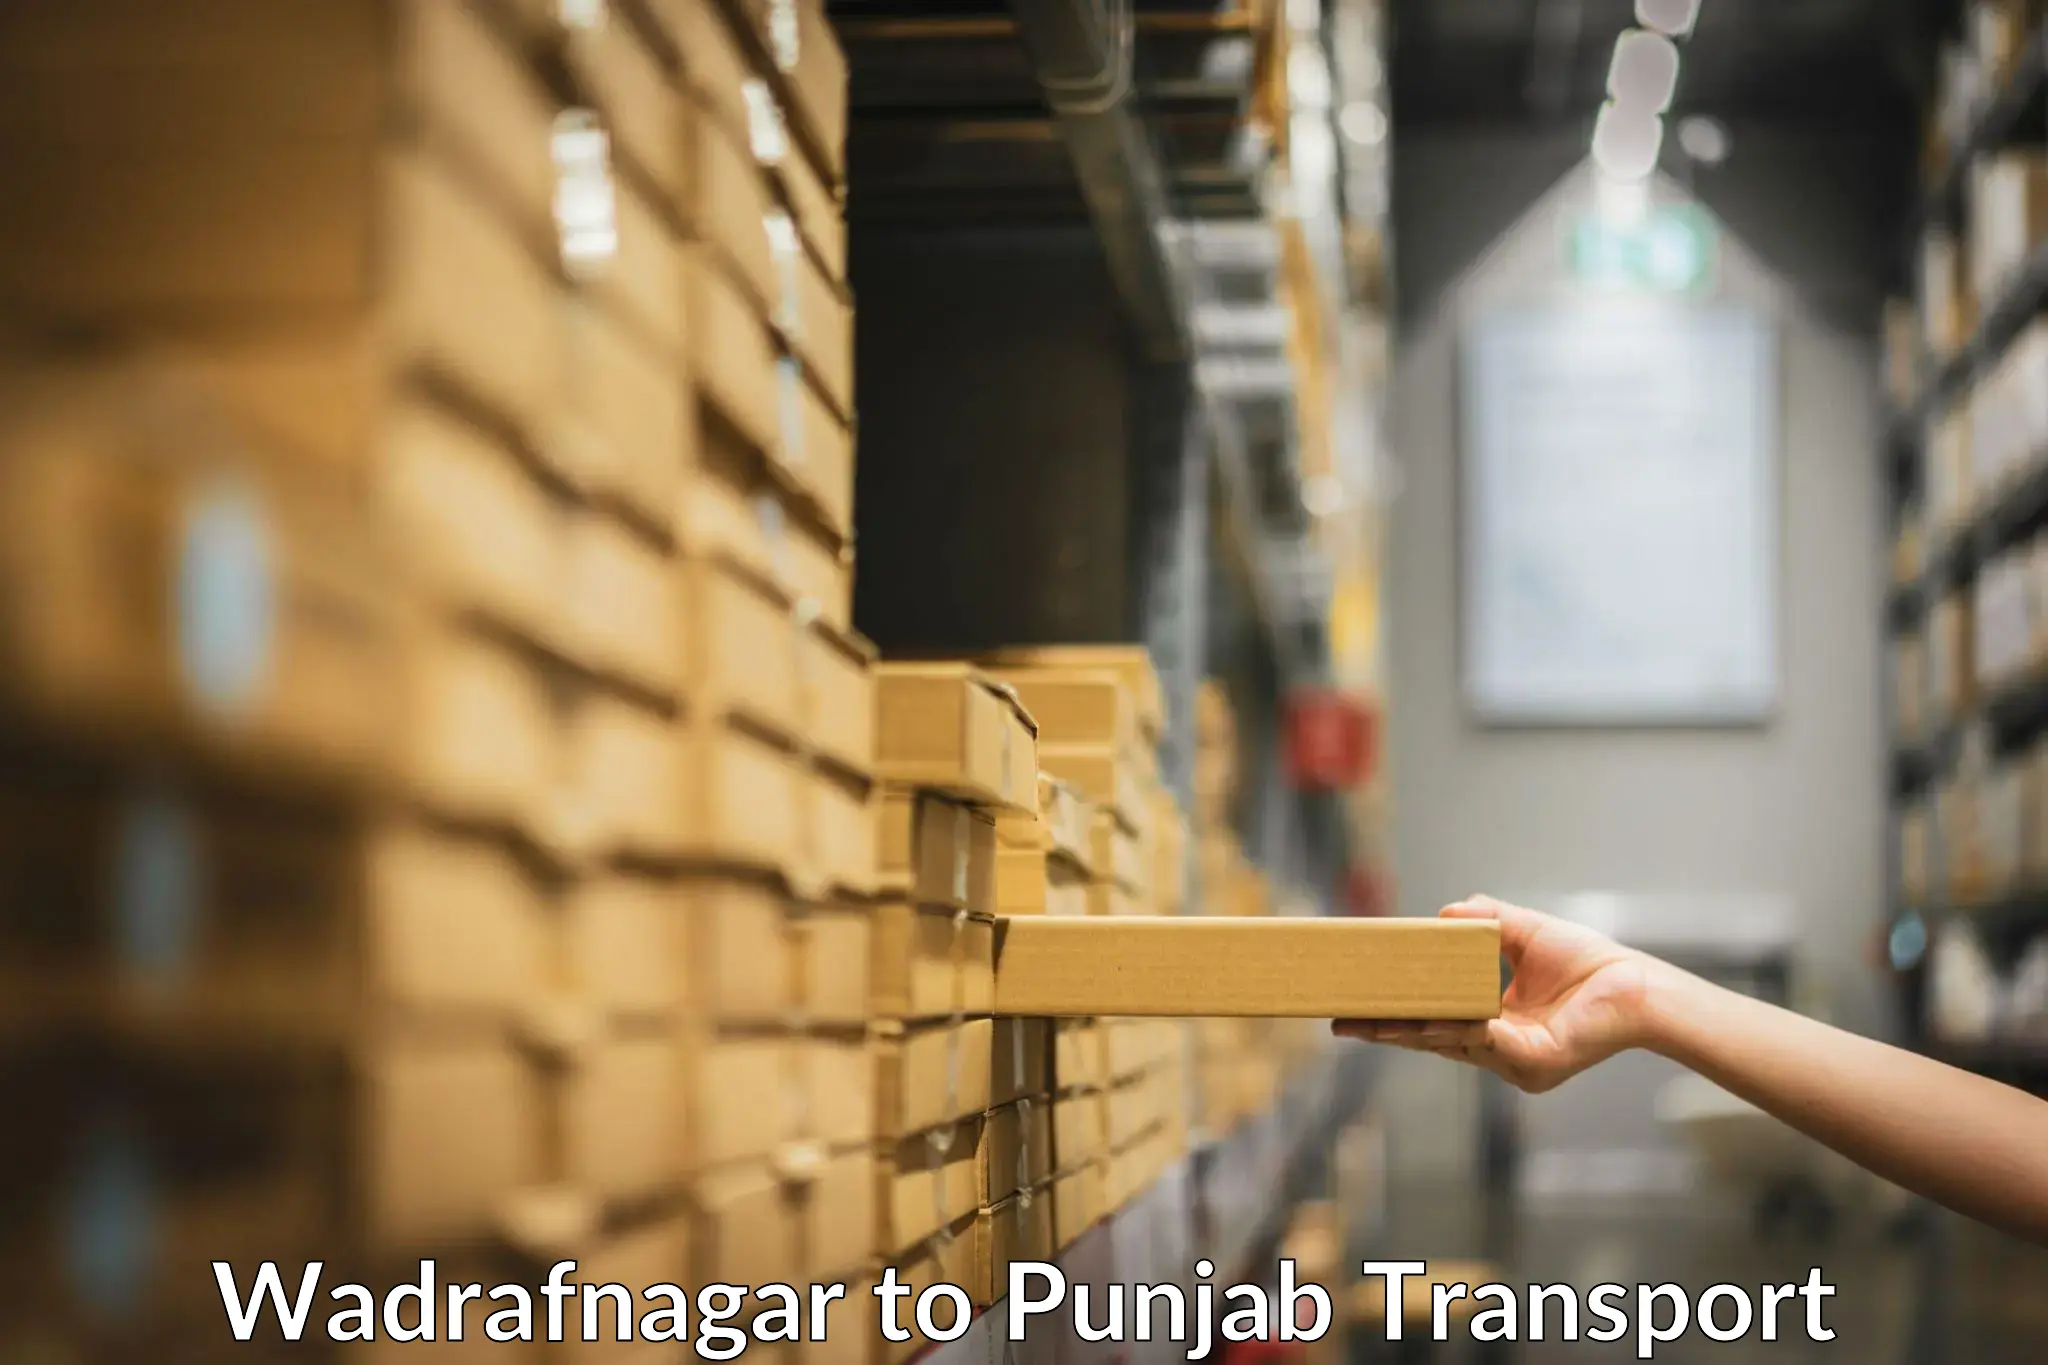 Transportation solution services Wadrafnagar to Pathankot